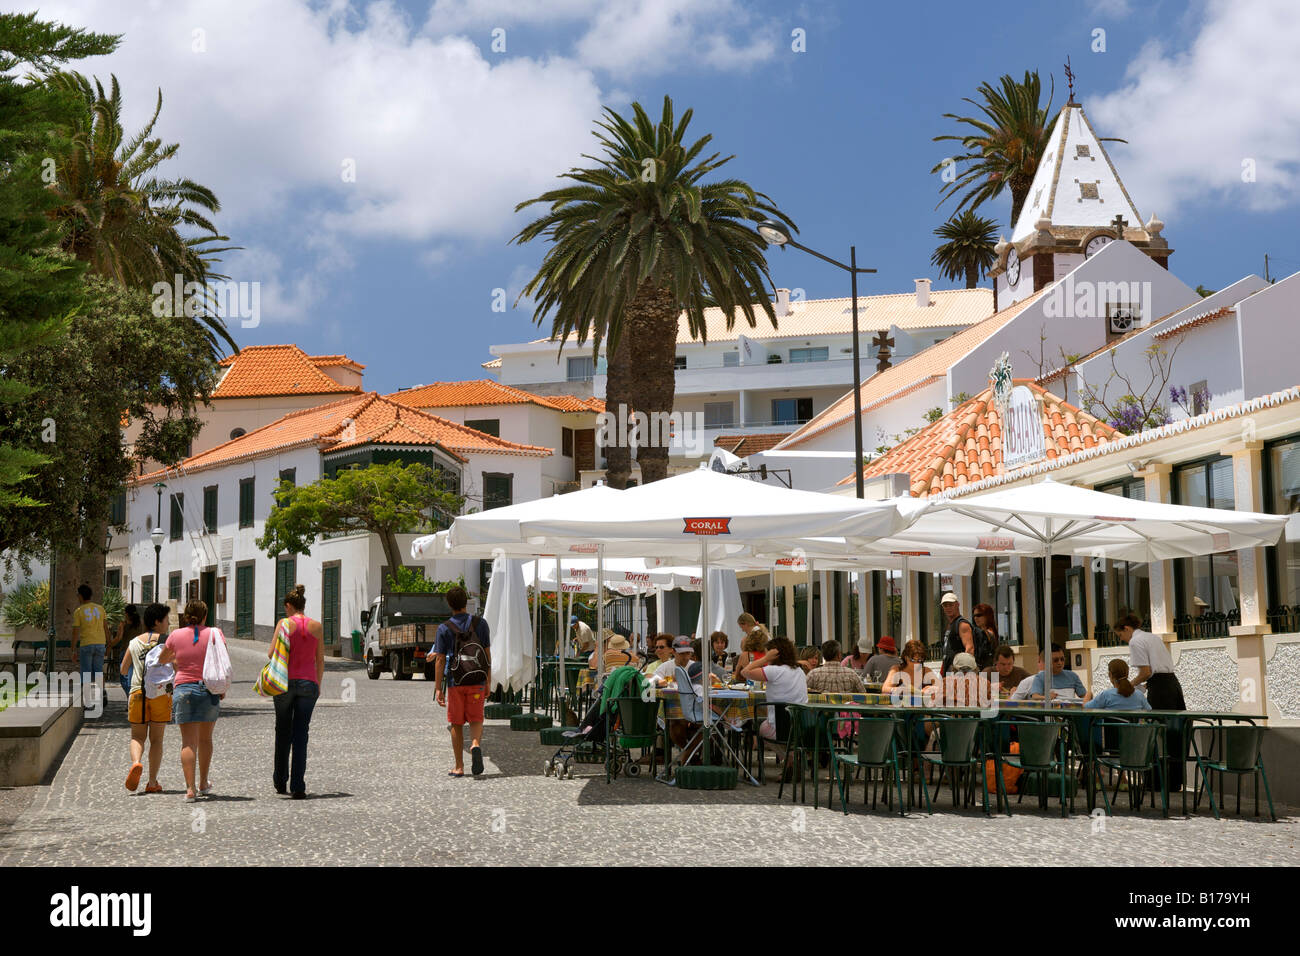 The Town Of Vila Baleira On The Portuguese Atlantic Island Of Porto Santo Stock Photo Alamy